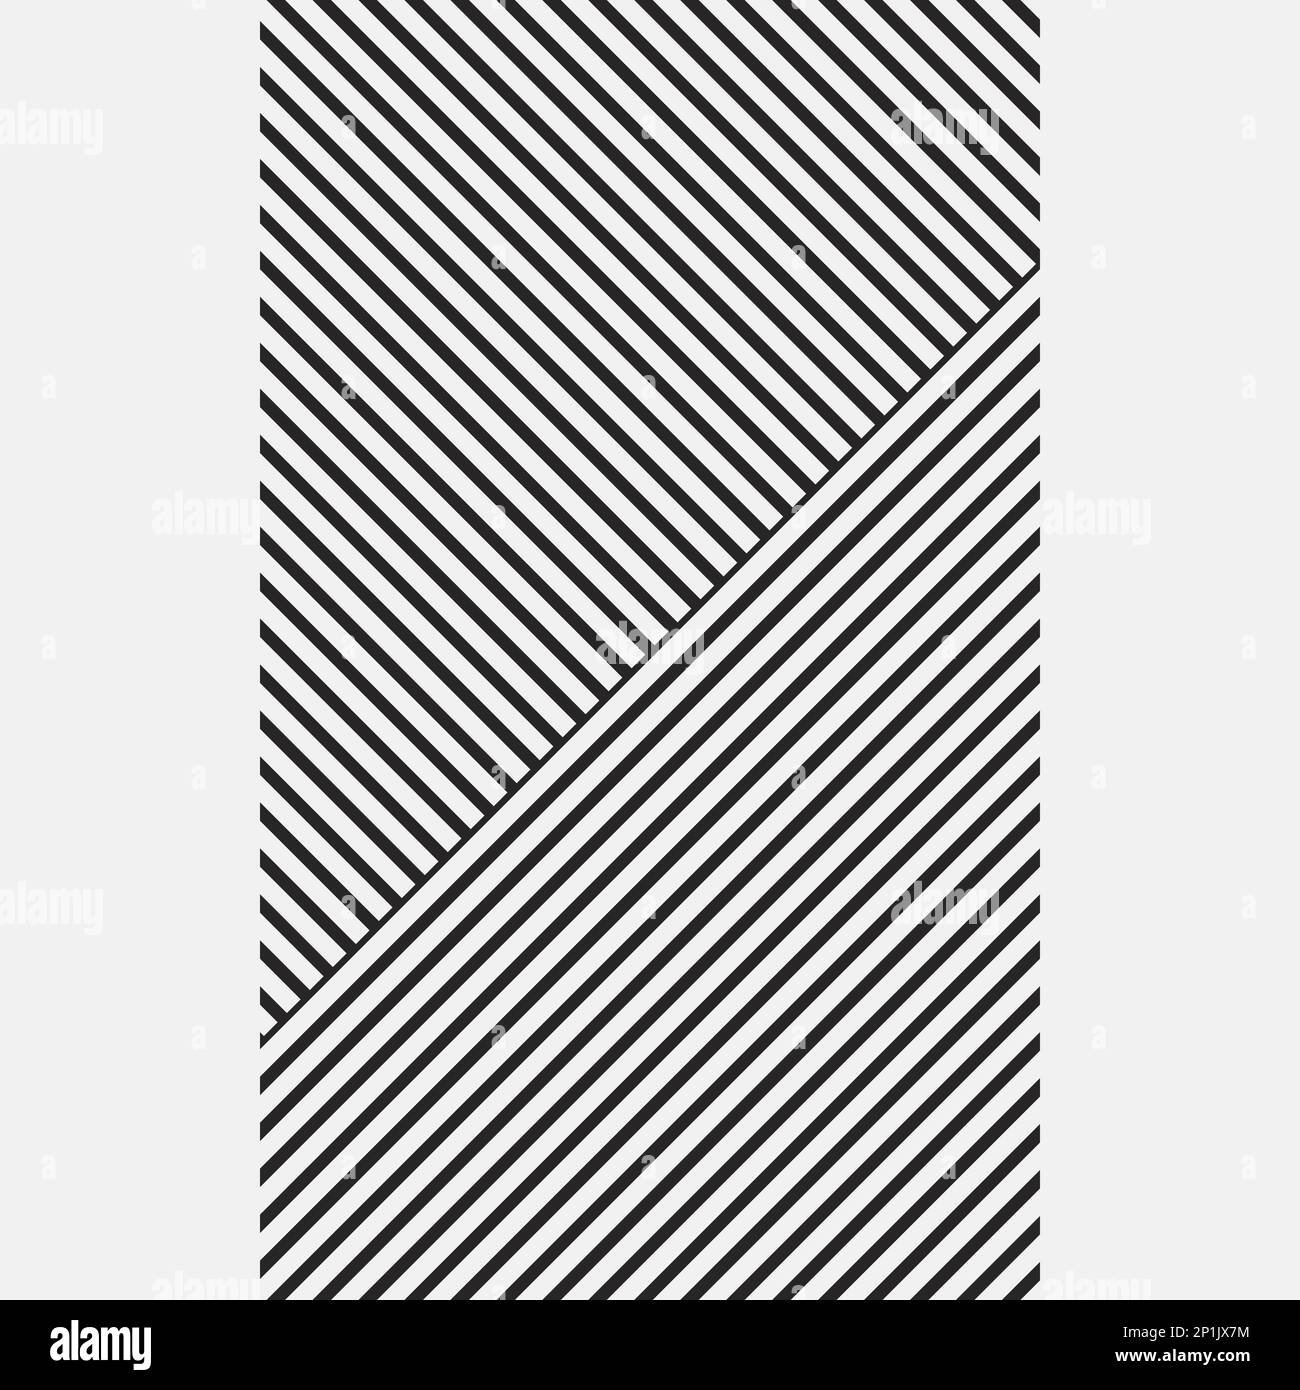 Geometrischer grafischer Hintergrund mit schwarzen schrägen Linien in der Mitte des Posters. Zwei gestreifte Trapezspitzen, die sich an den Seiten berühren. Schraffur jedes Trapez Stock Vektor